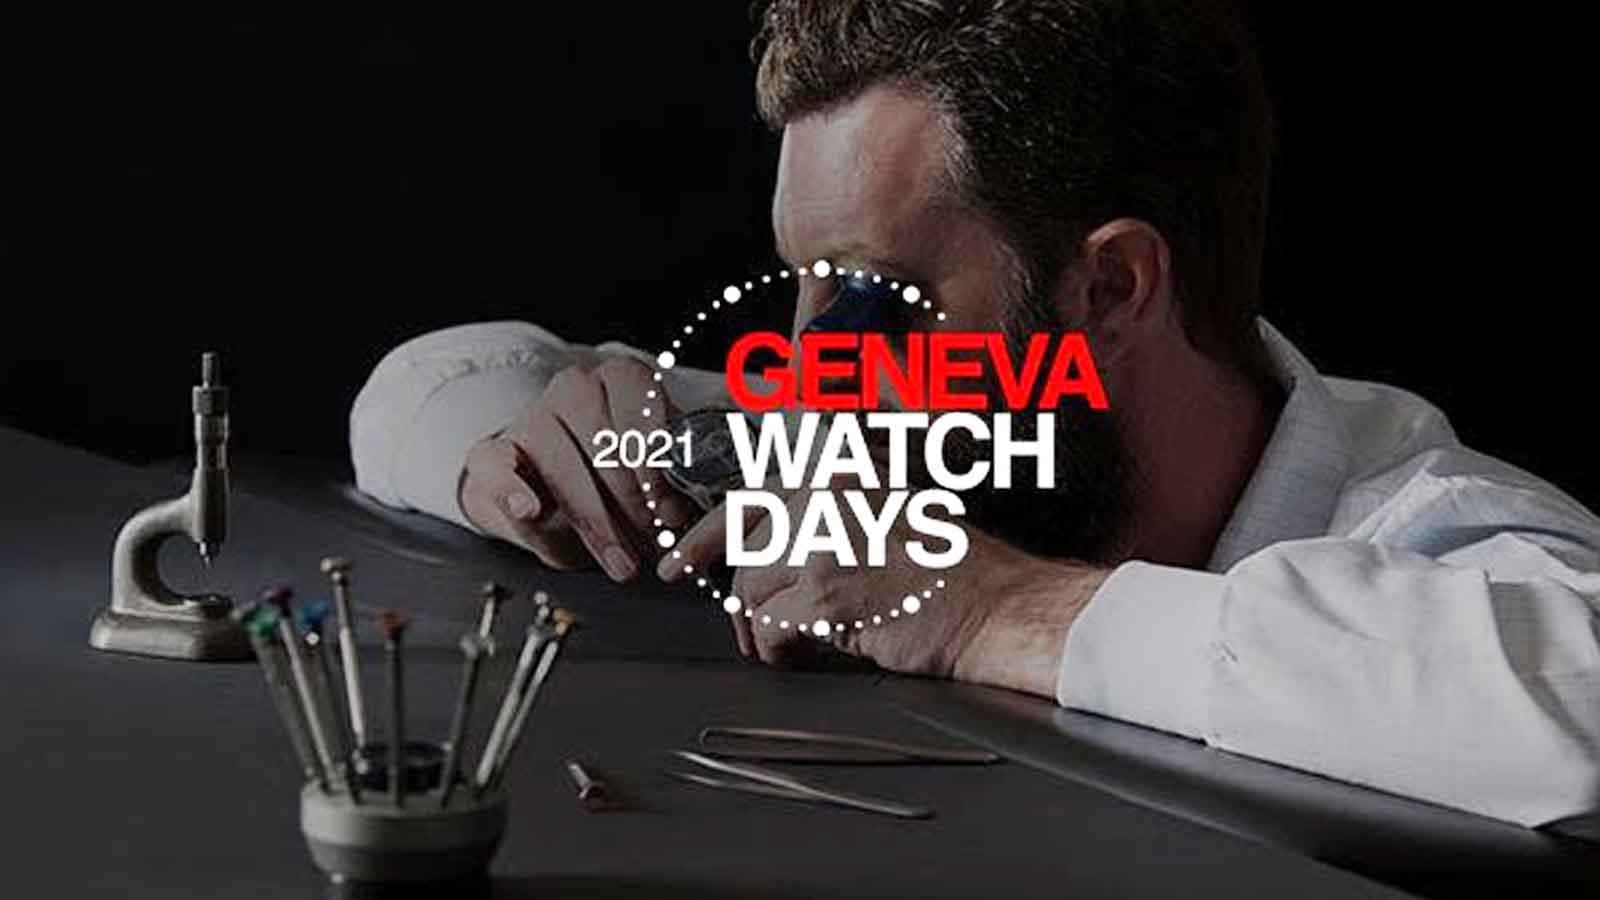 Tín đồ đồng hồ chú ý: Geneva Watch Days 2021 sẽ diễn ra vào cuối tháng 8